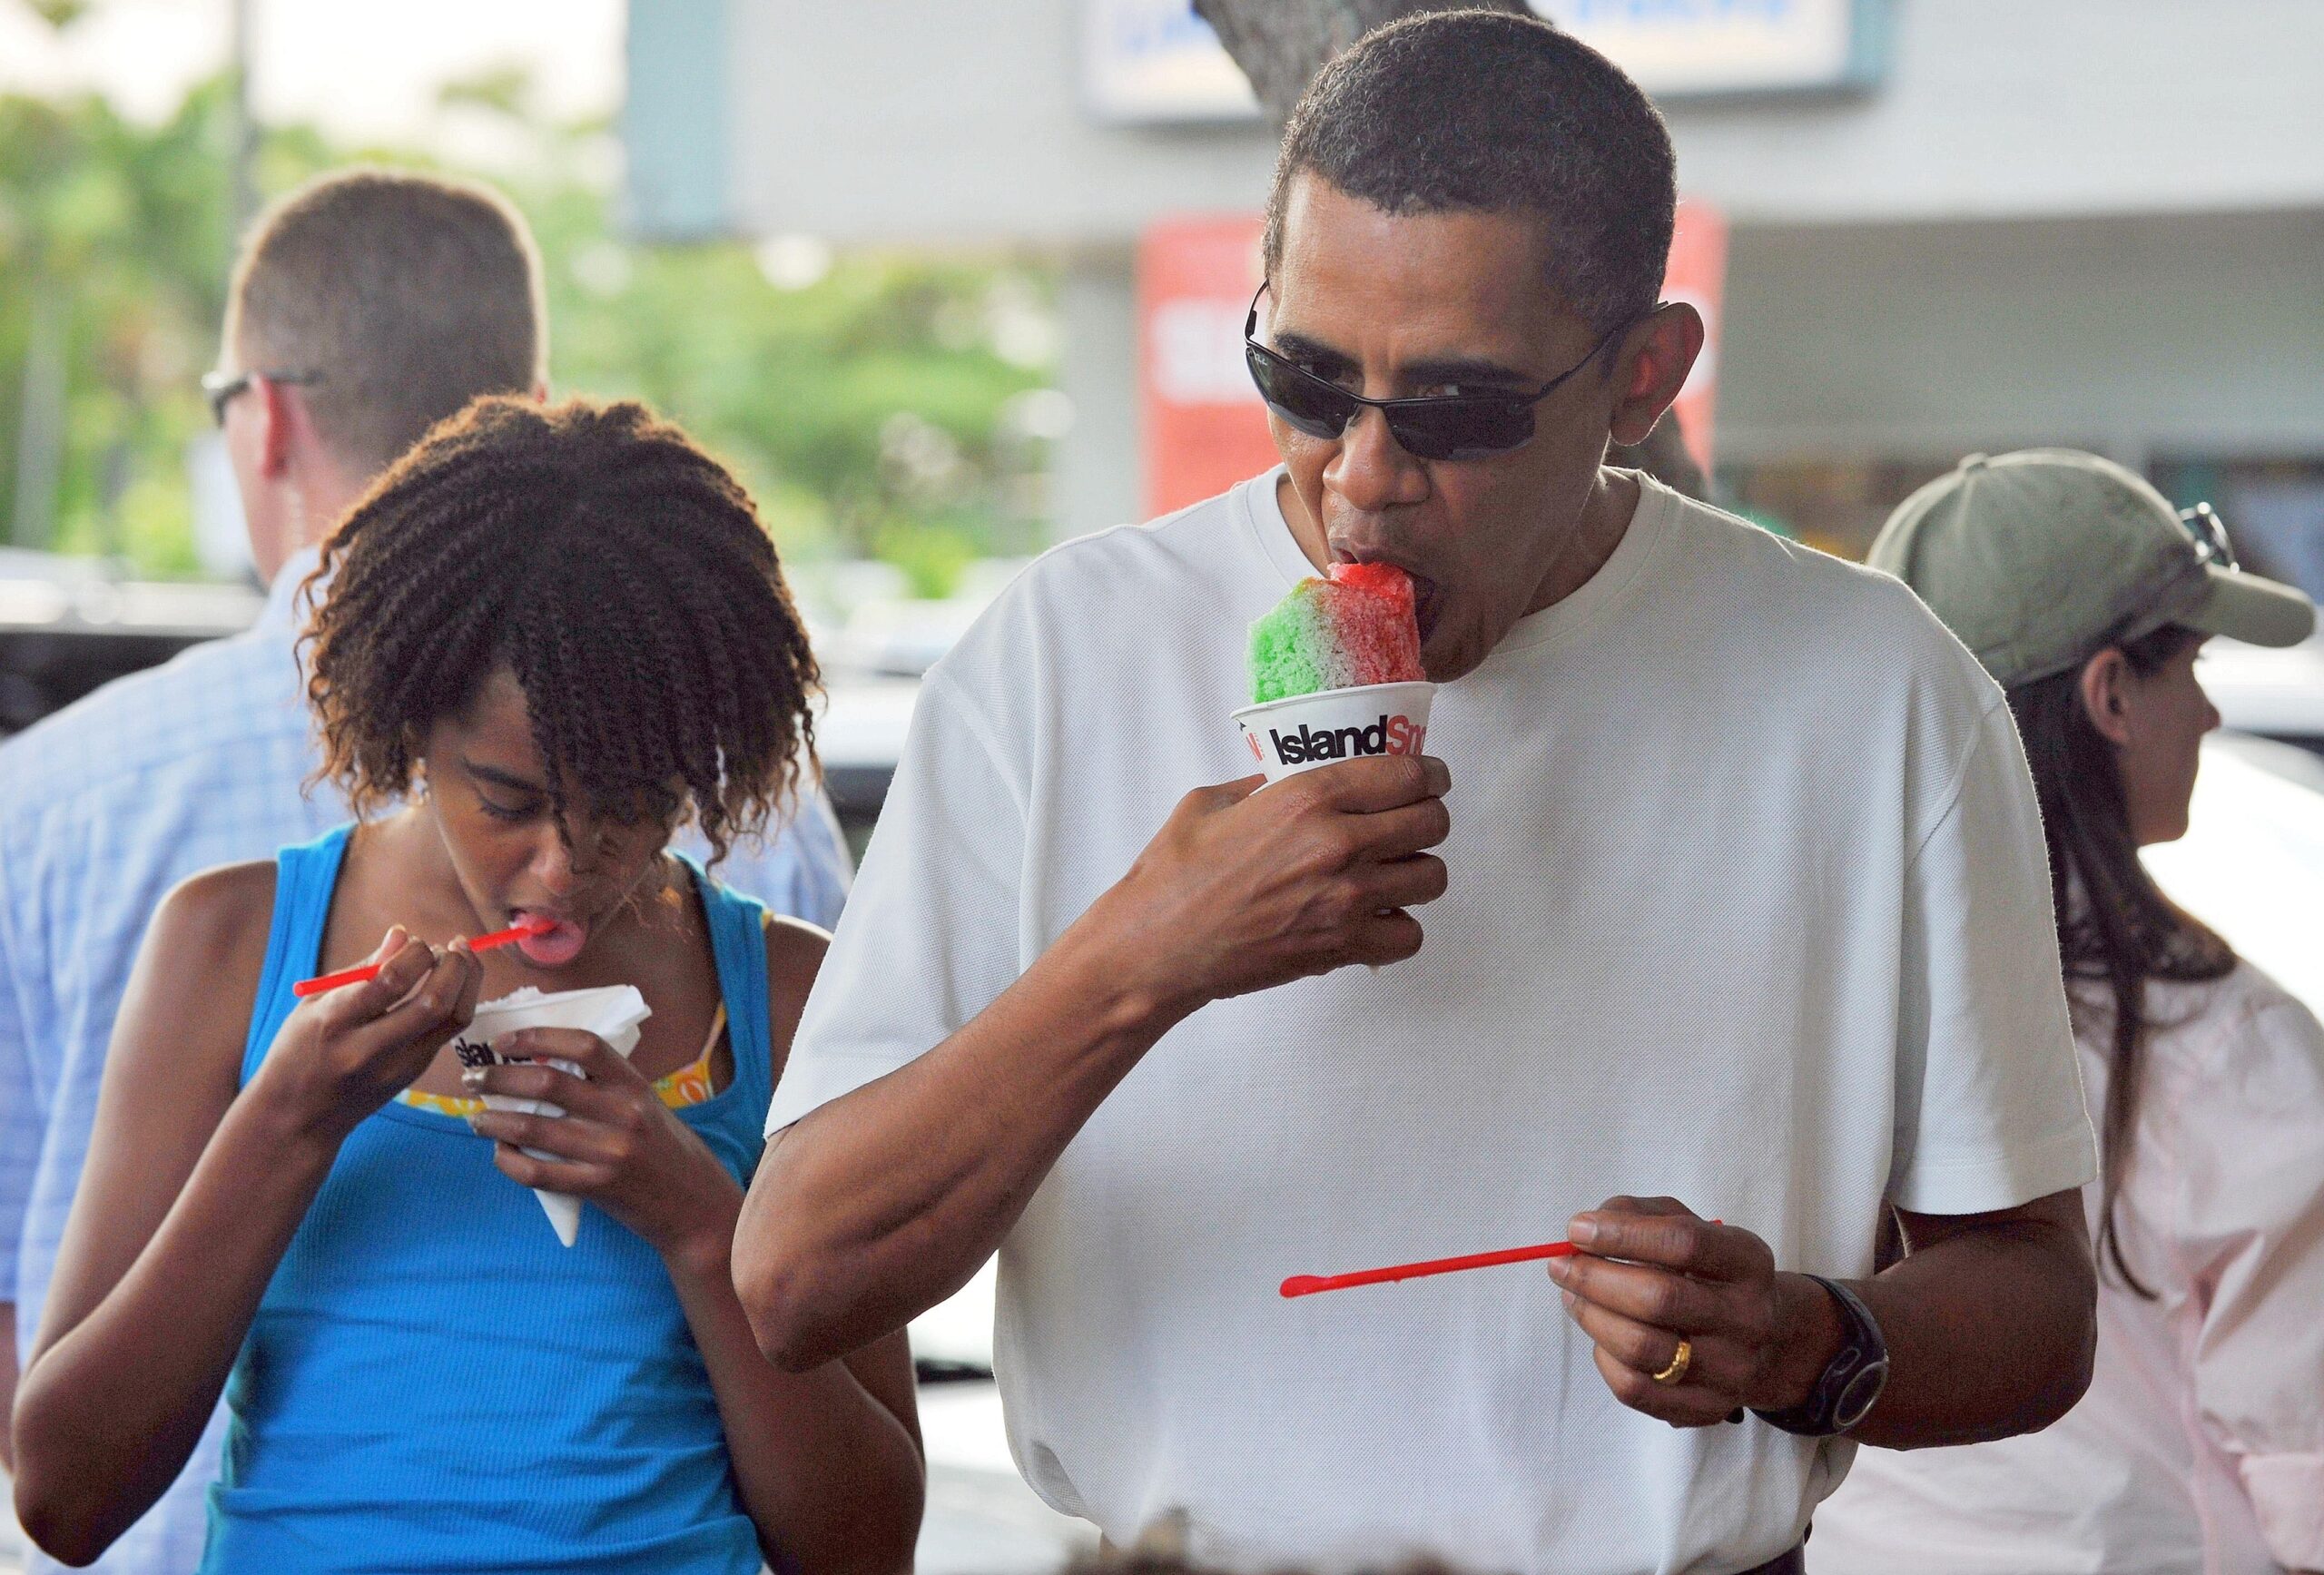 ...auf Hawai konnte Obama sich zum Jahreswechsel 2009/2010 dennoch nehmen. Vater und Tochter genießen beim gemütlichen Strandspaziergang eine eiskalte Erfrischung. Schon bald wird sich Malia die Eistüte vermutlich lieber mit gleichaltrigen Jungs teilen statt mit ihrem Vater. Einfach...